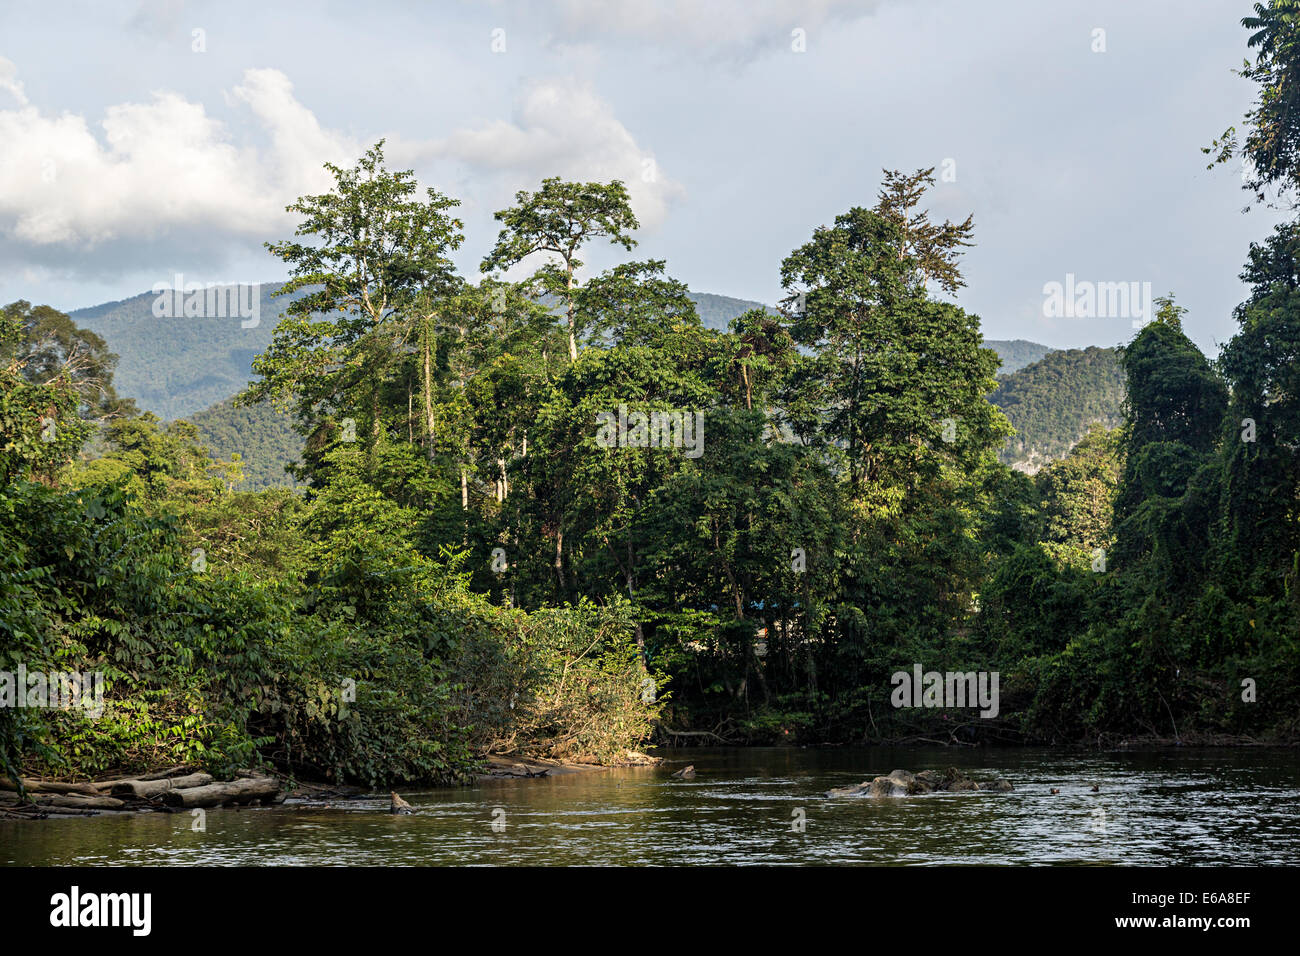 River Melinau in the rainforest in Gunung Mulu National Park, Malaysia Stock Photo